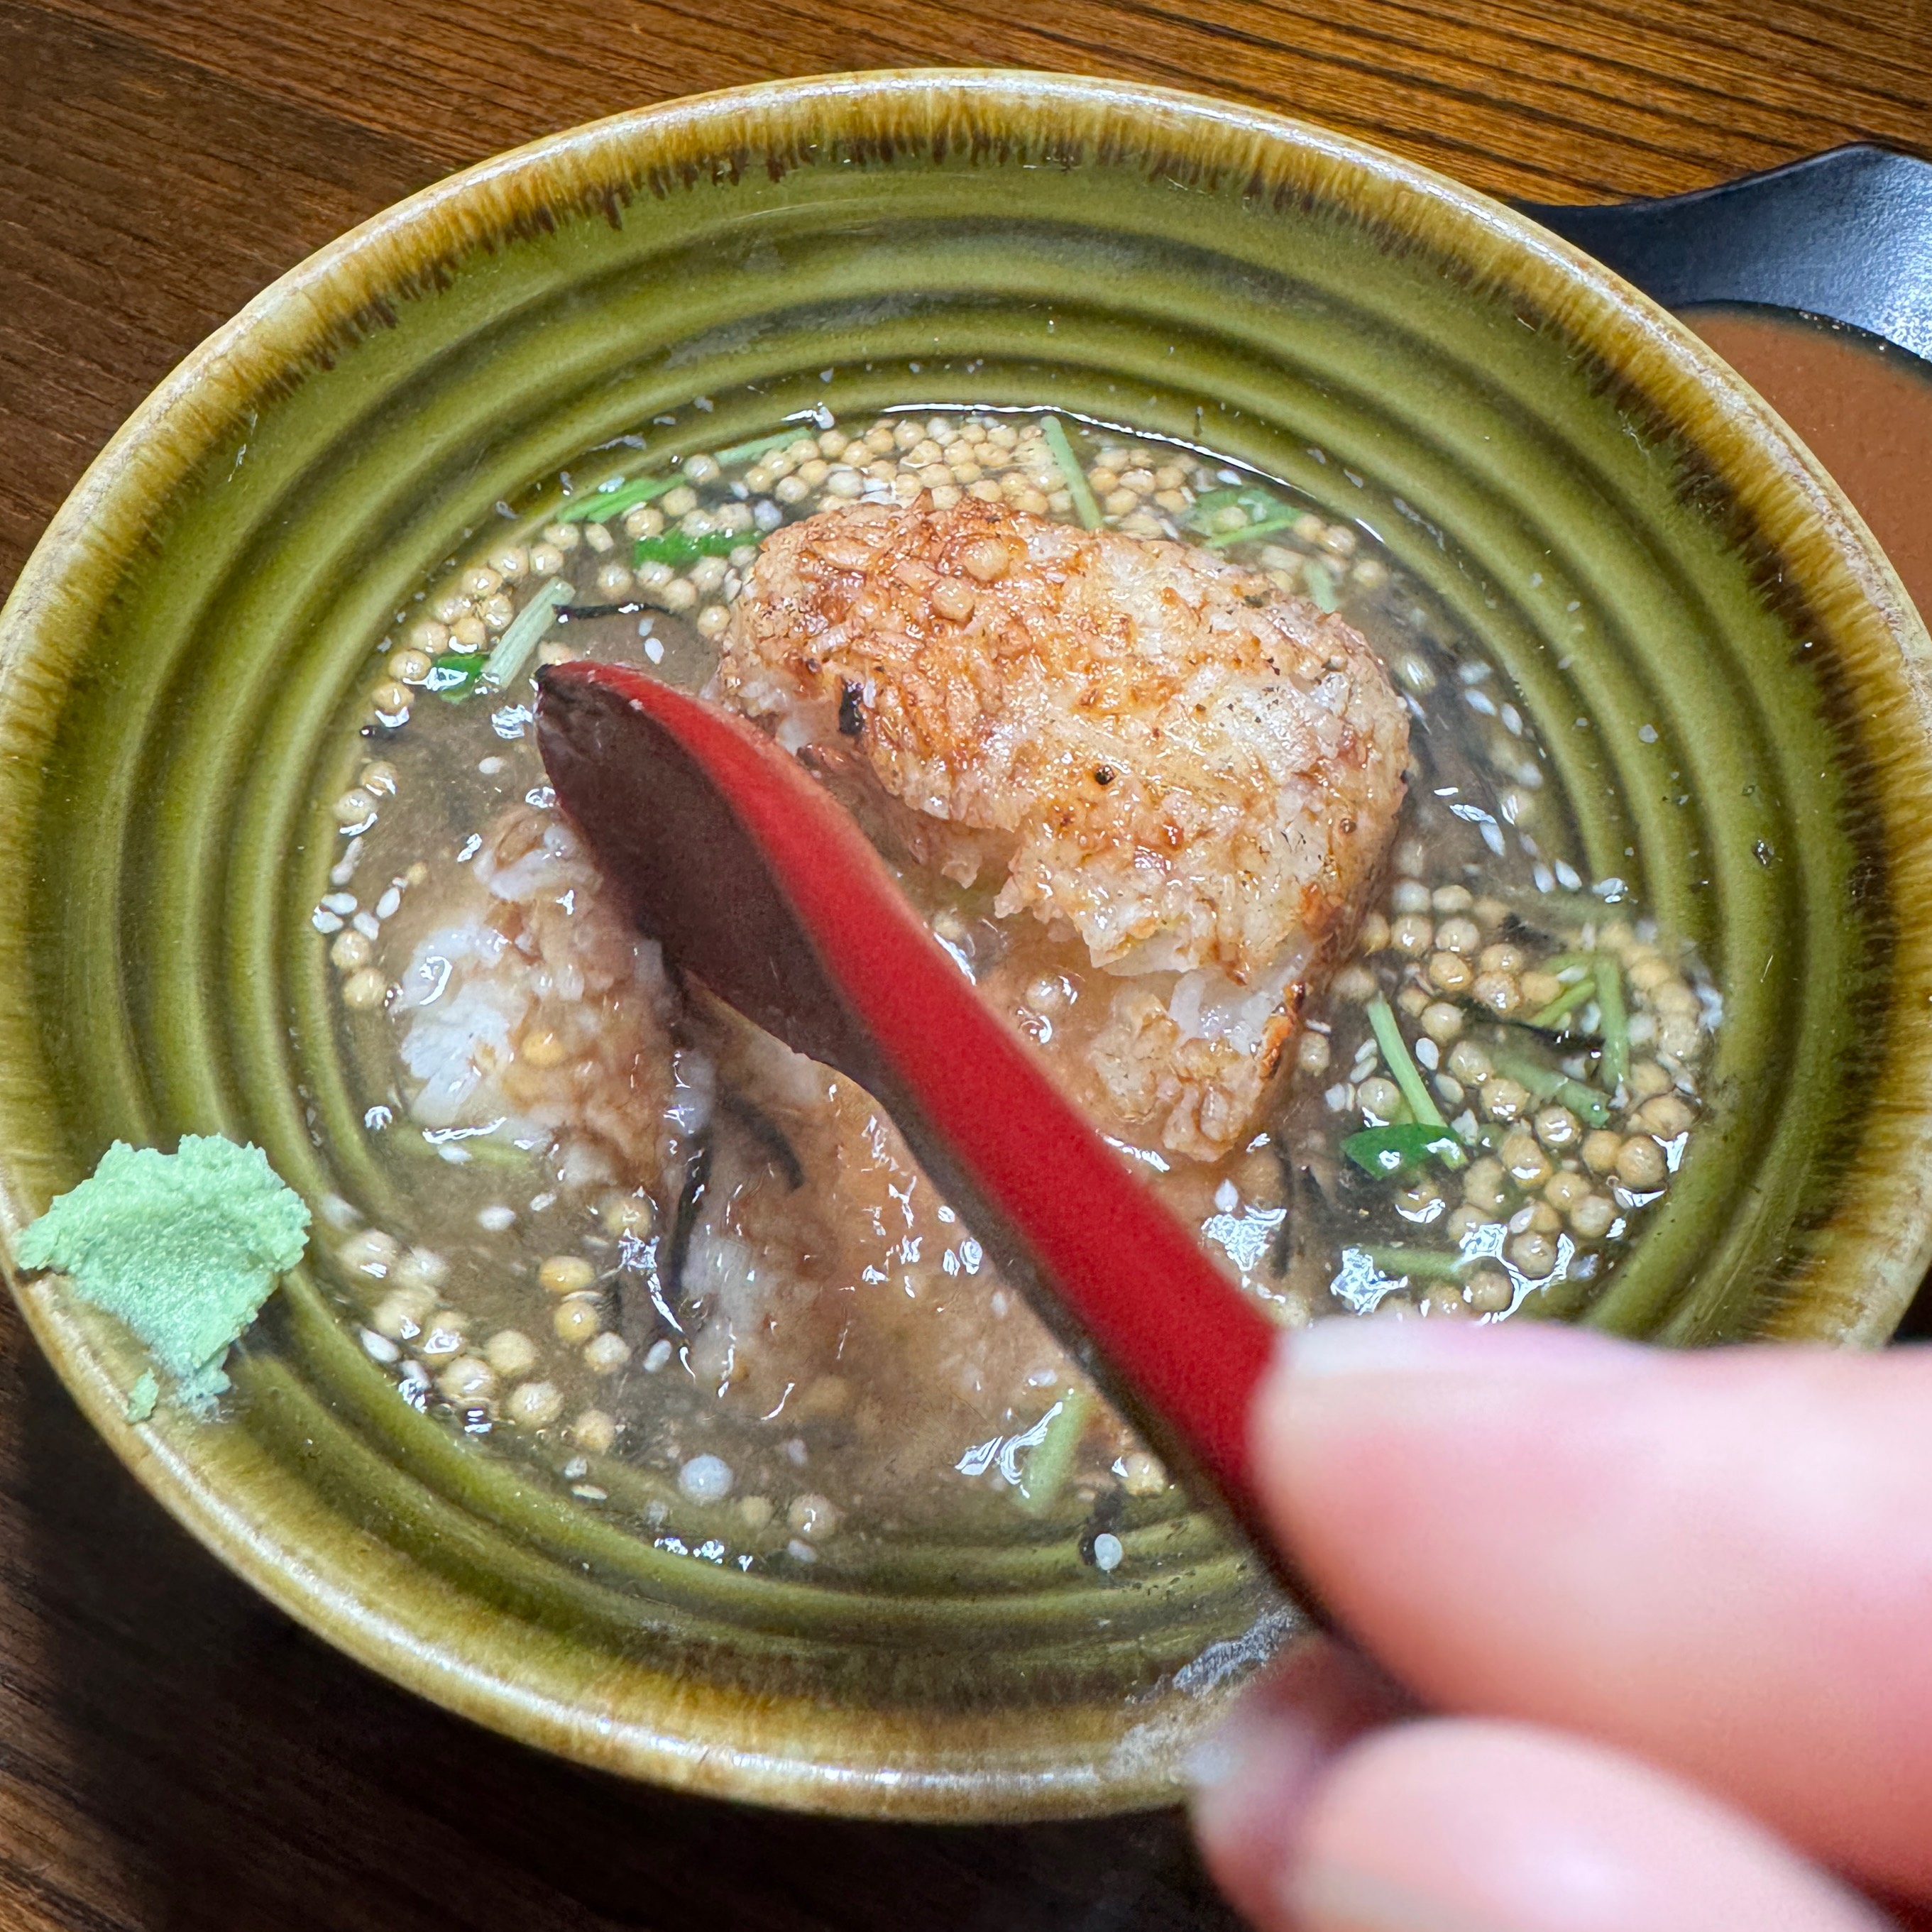 Yakionigiri Chazuke With Salmon $14 at Yakitori Koshiji on #foodmento http://foodmento.com/place/14611